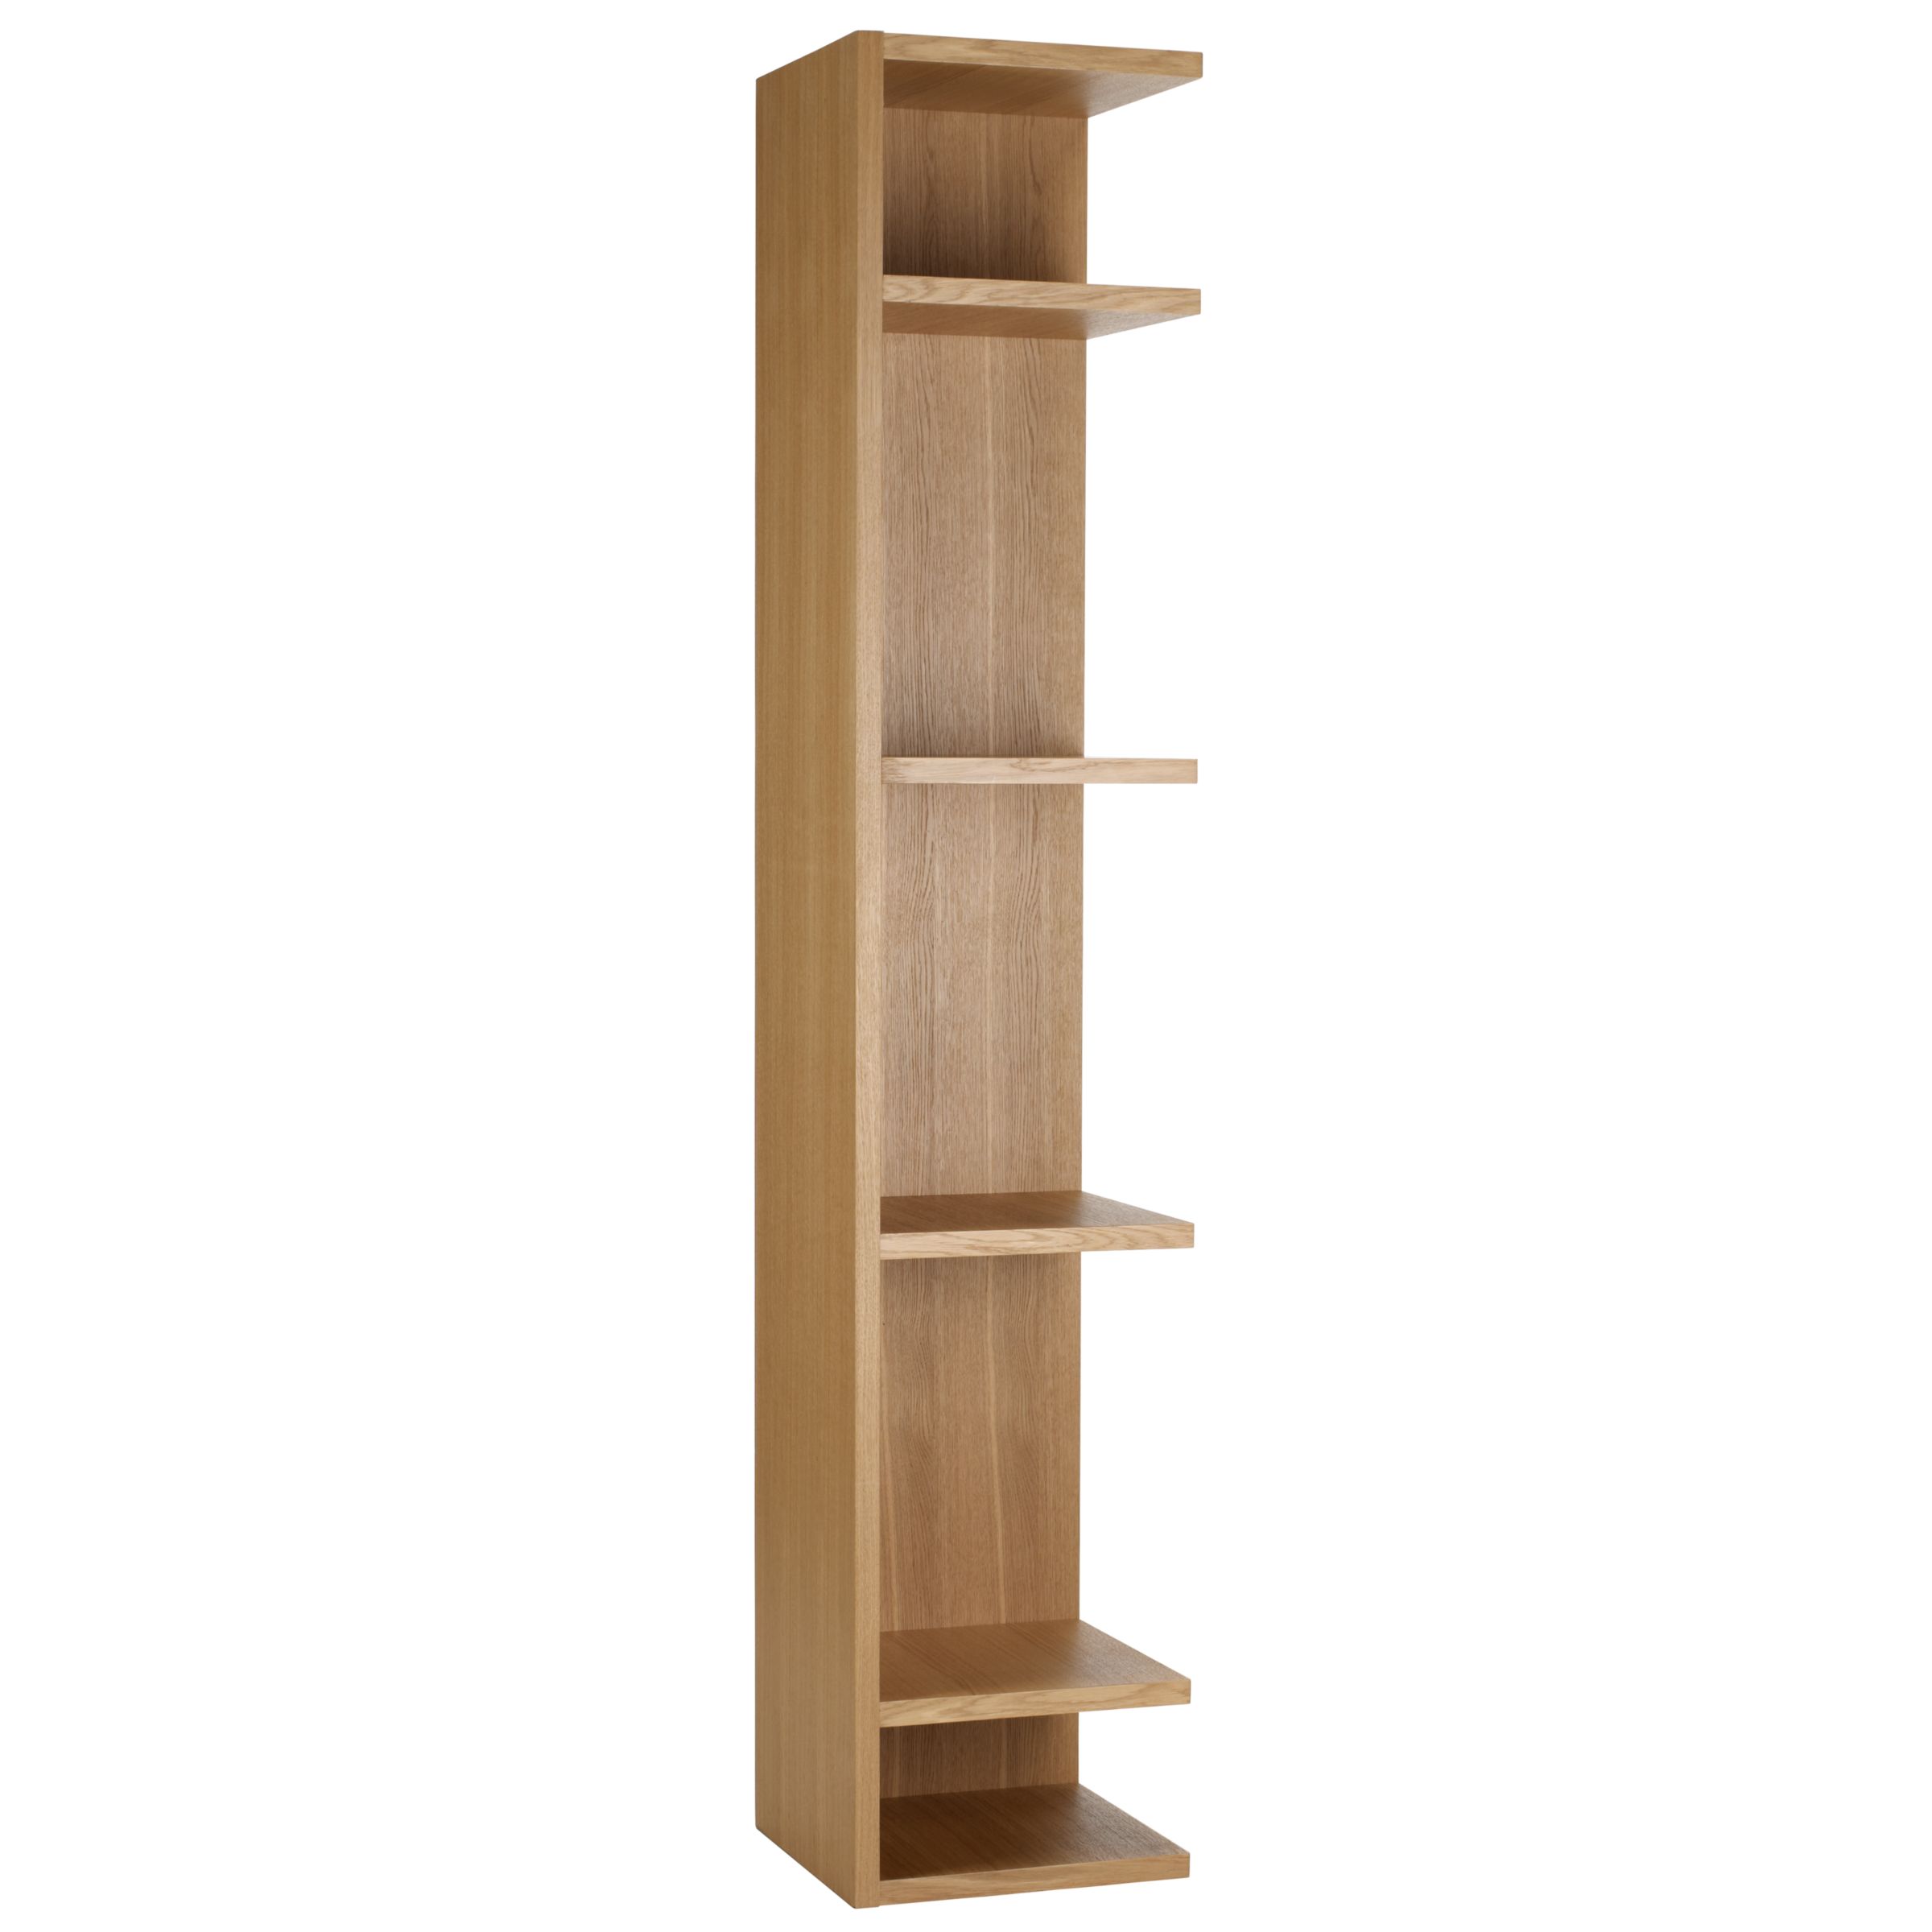 Content by Conran Angle Tall Bookcase, 4 Shelf,